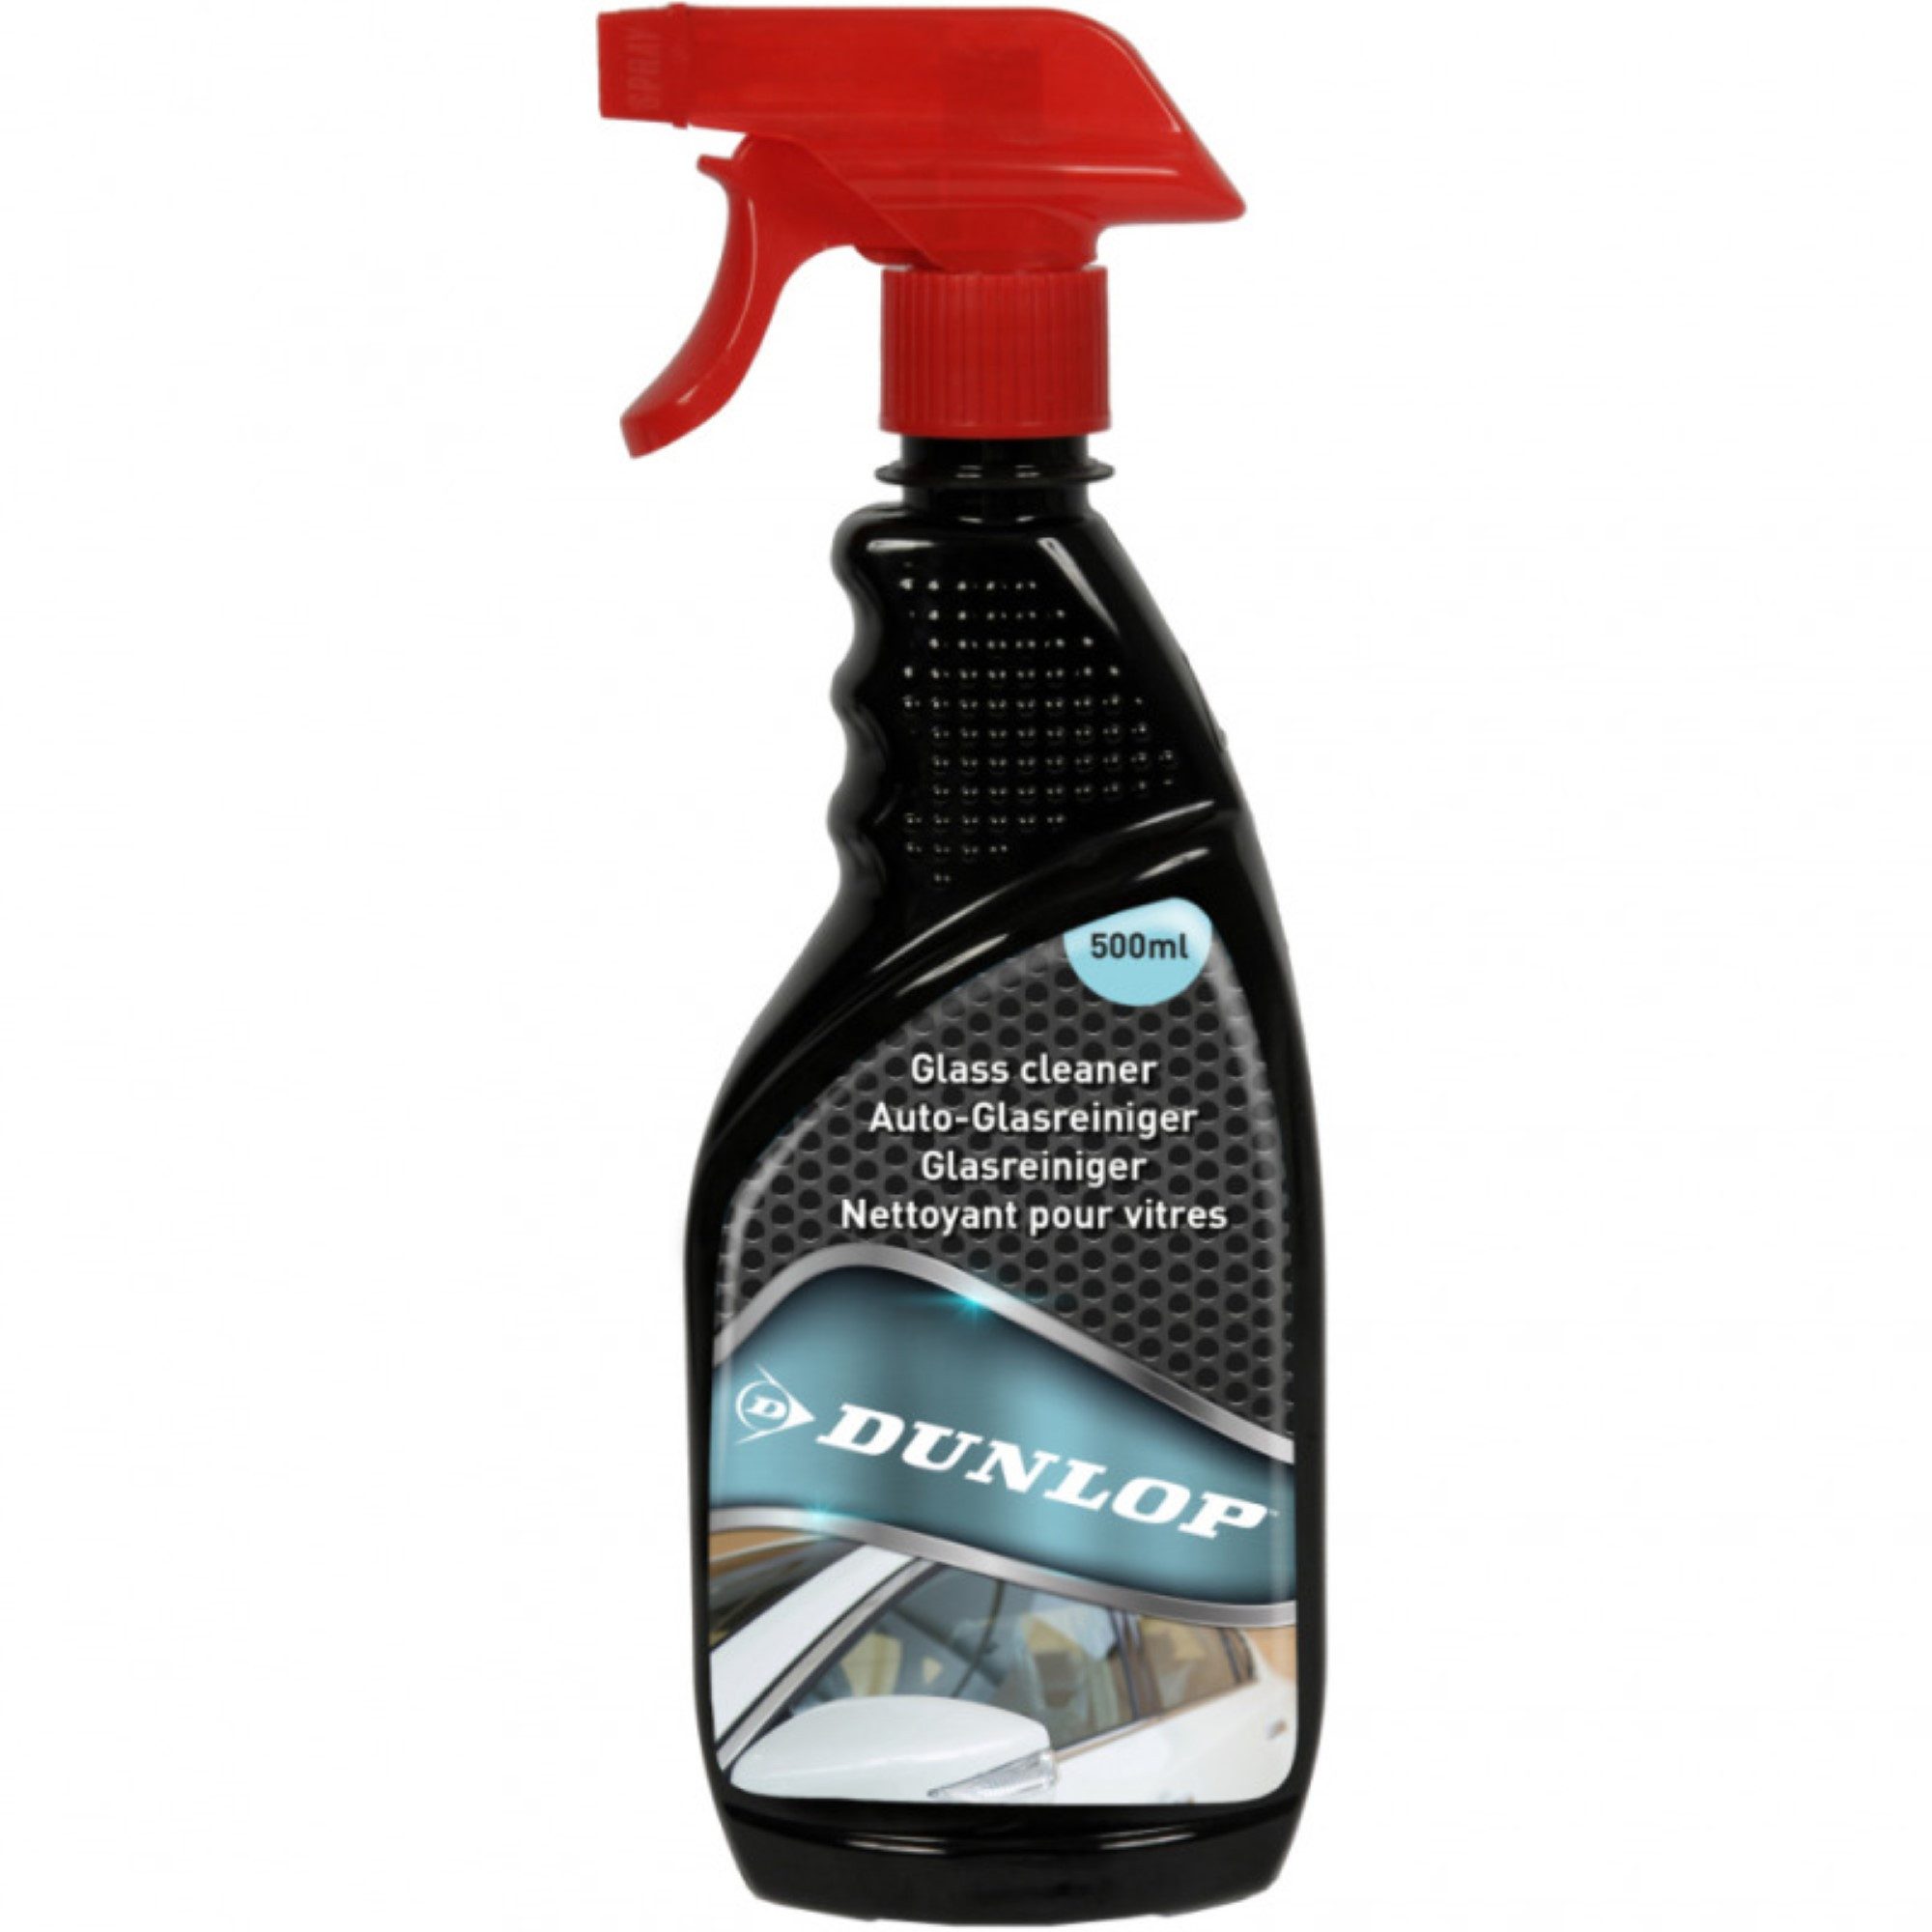 Dunlop Auto Glasreiniger Reinigungsmittel Autopflegemittel 500 ml Glasreiniger